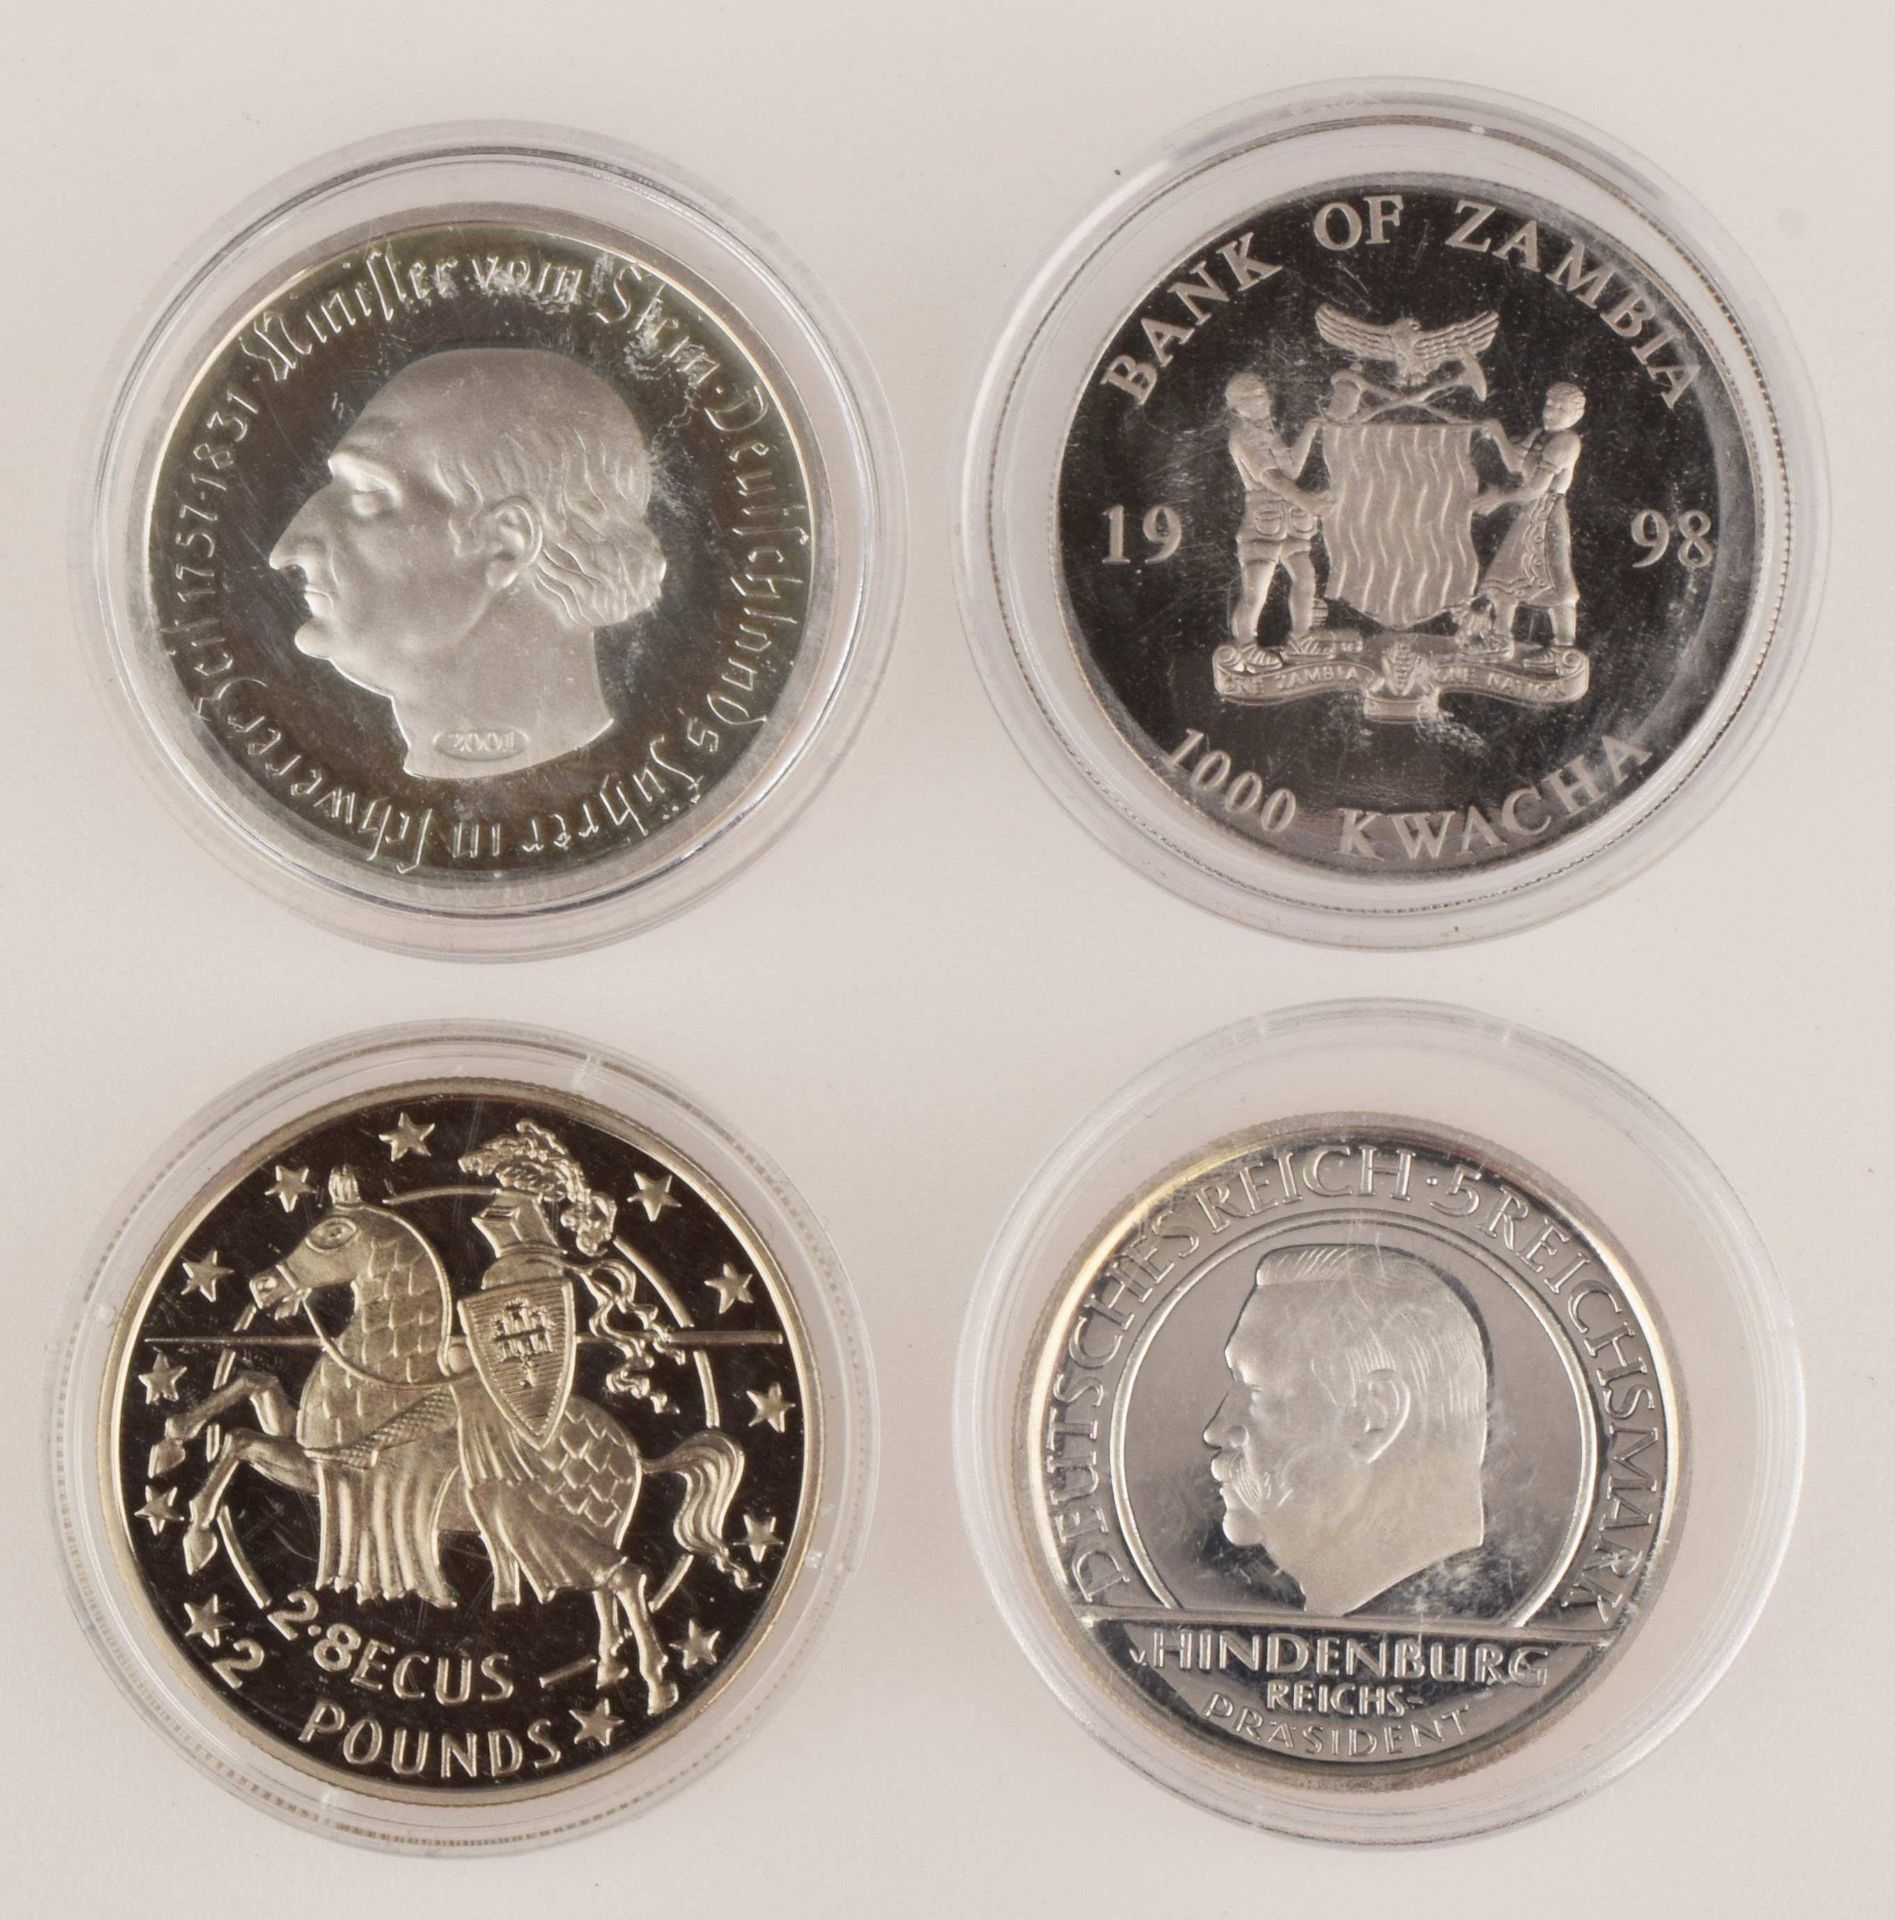 Konvolut Münzen bzw. Gedenkprägungen insg. 4 versch. Ausgaben, 1 x 2 Pfund - 2,8 Ecus Gibraltar - Image 3 of 3